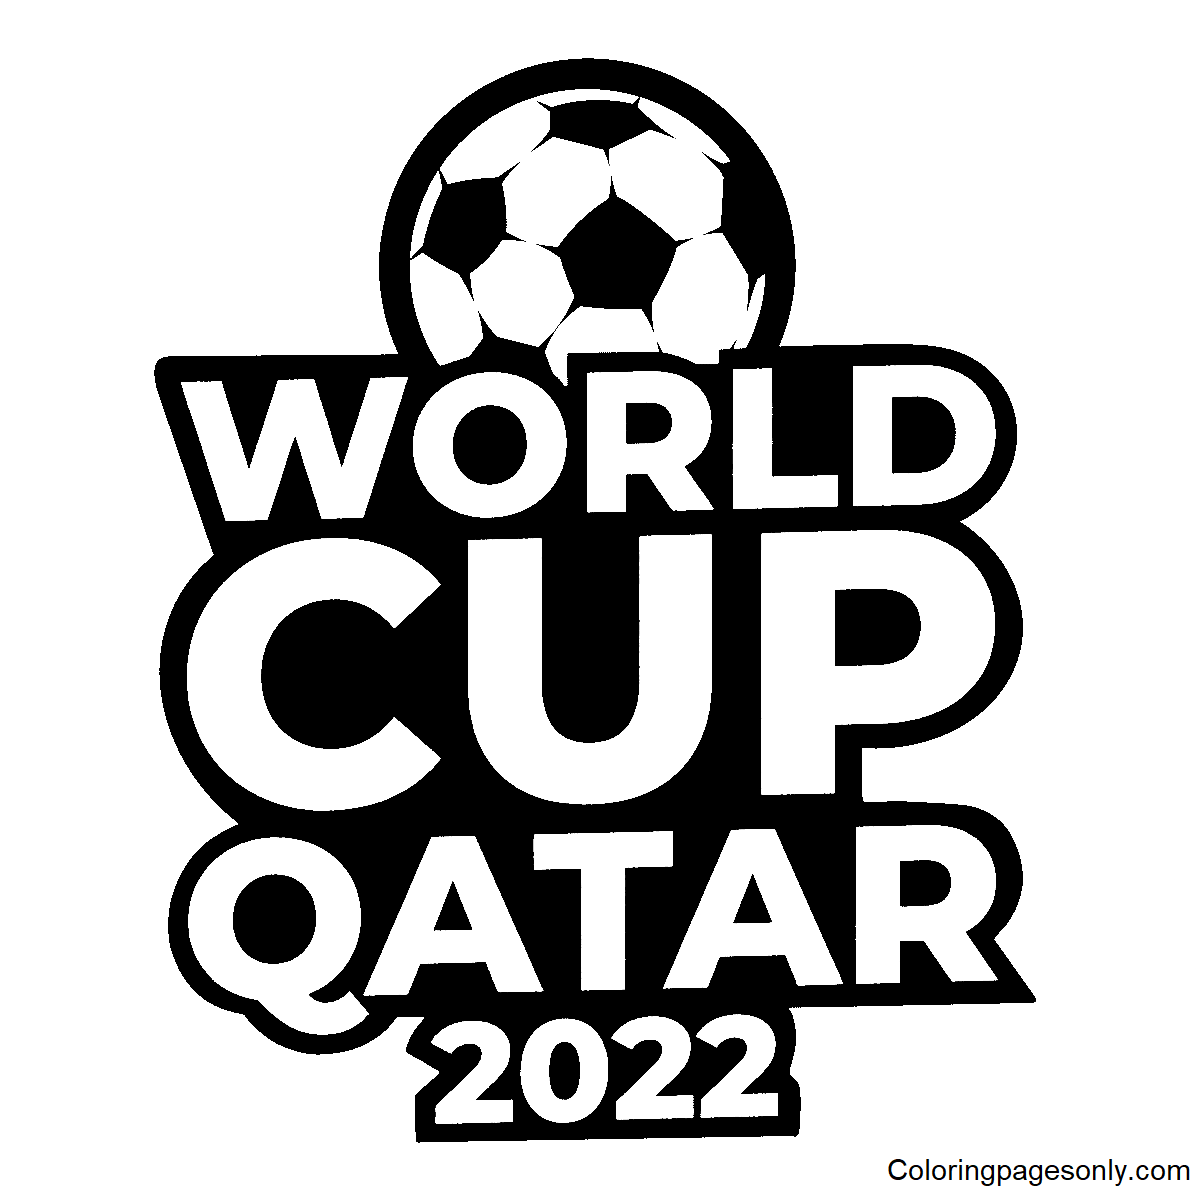 Desenho para colorir da Copa do Mundo 2022 no Catar